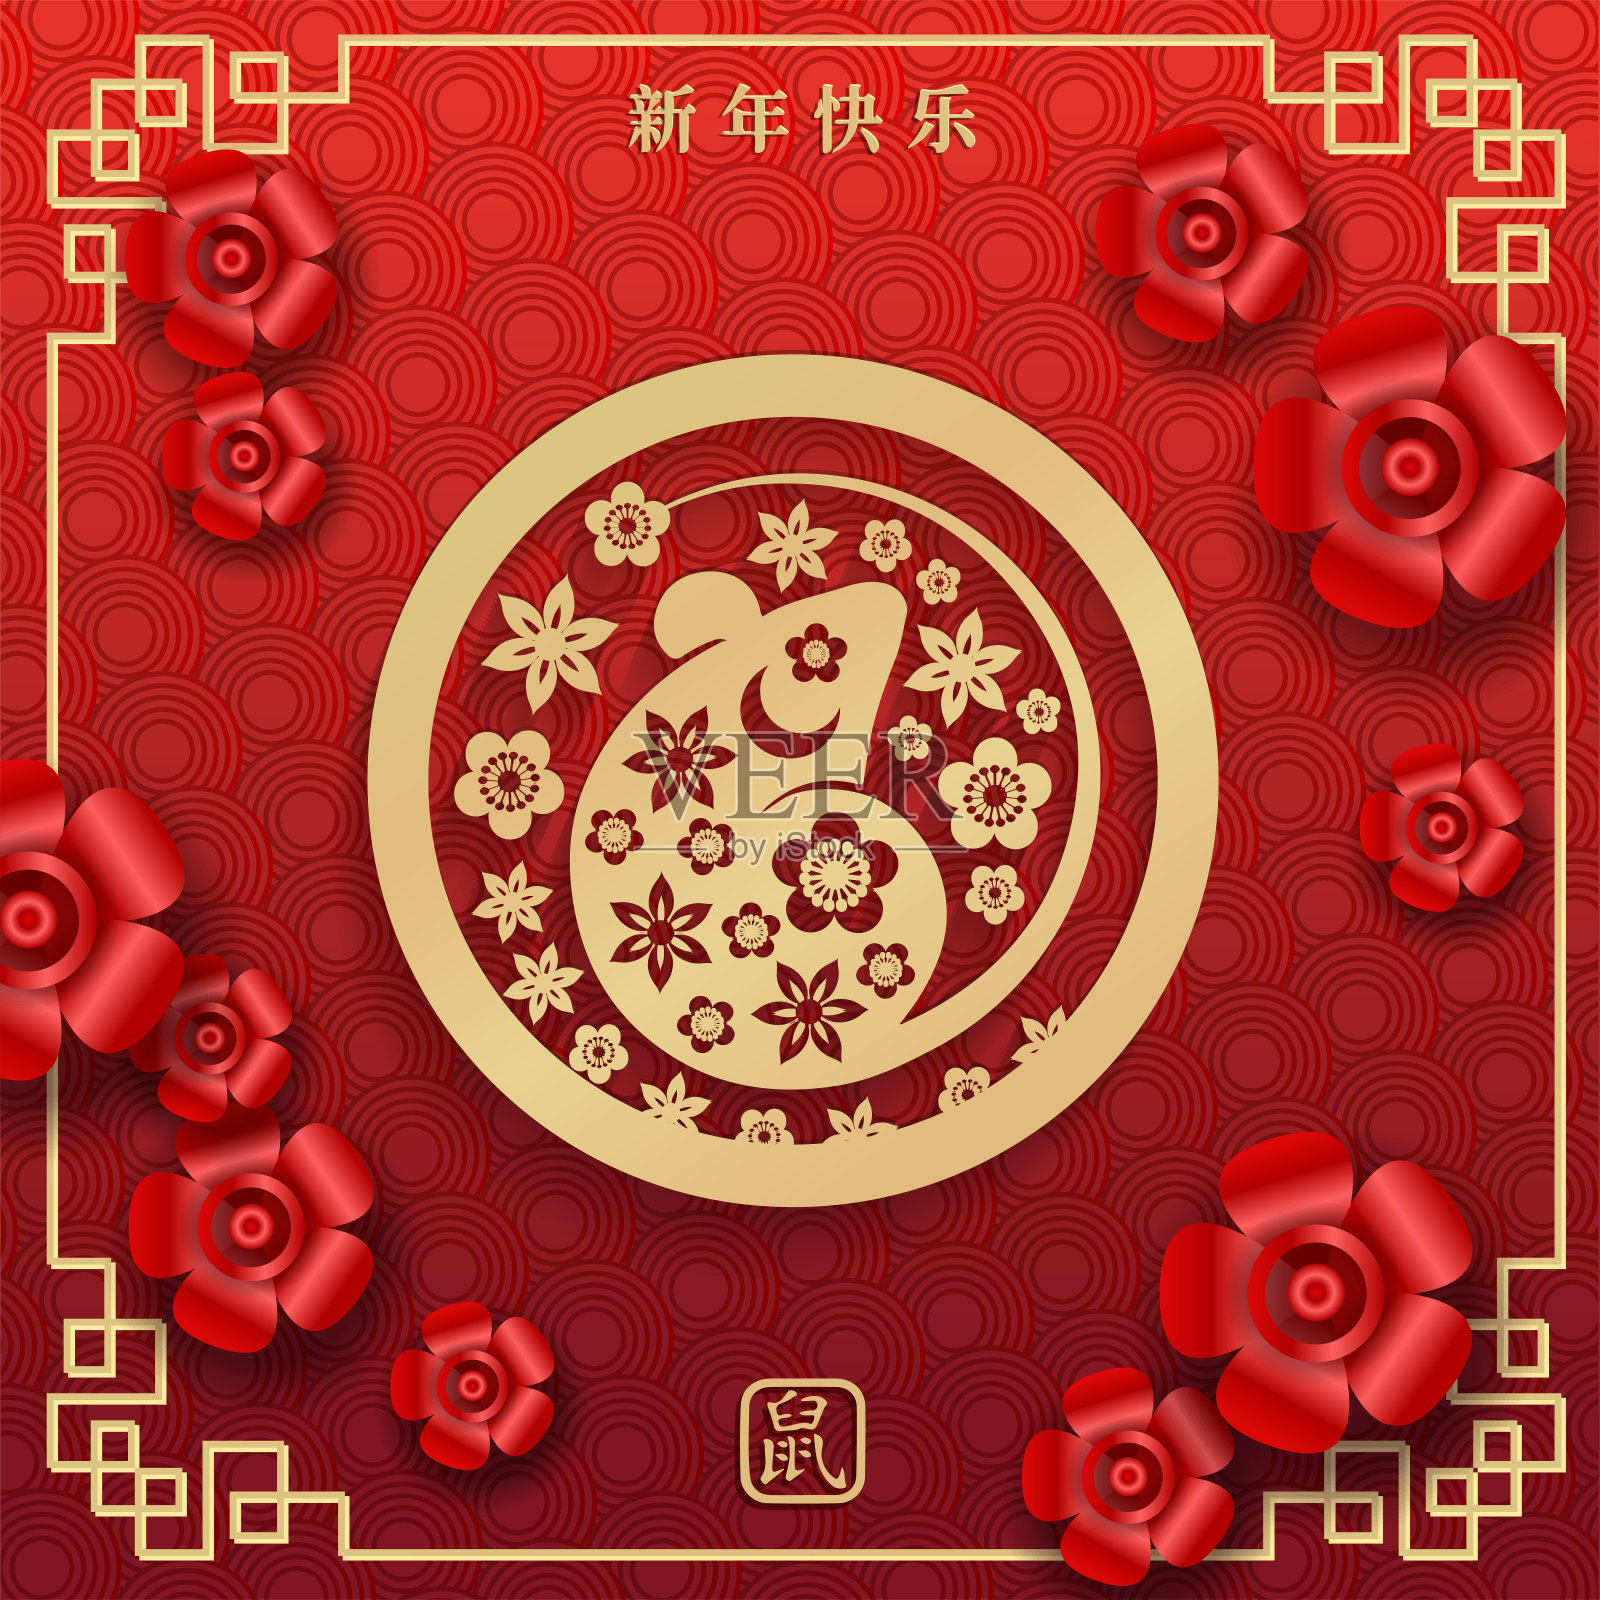 2020年生肖鼠年快乐，红色背景，金色边框，粉红梅花和东方亚洲元素。新年快乐，鼠年快乐。插画图片素材